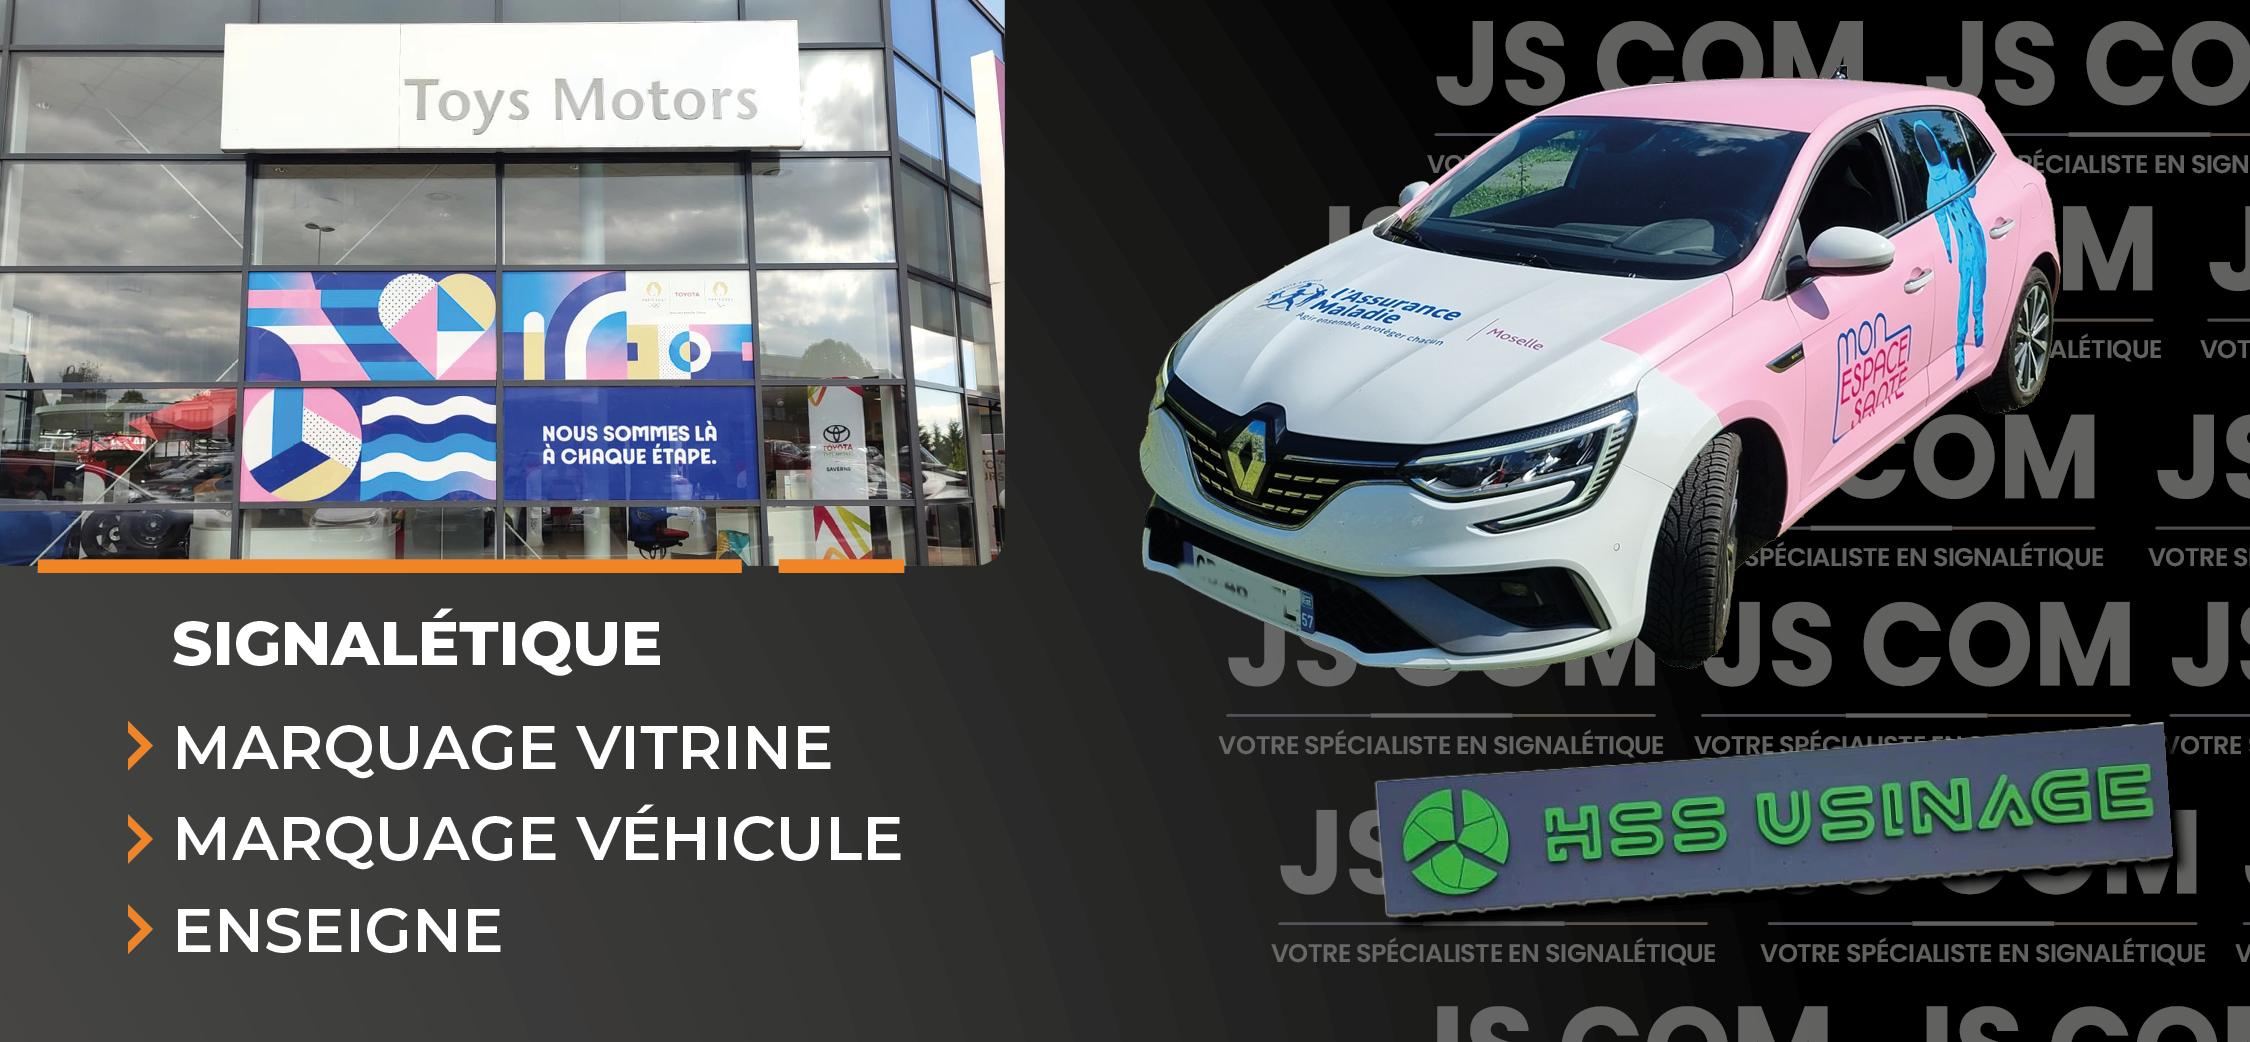 Bannière JS COM avec enseigne HSS Usinage, vitrine Toys Motors, et véhicule CPAM en covering